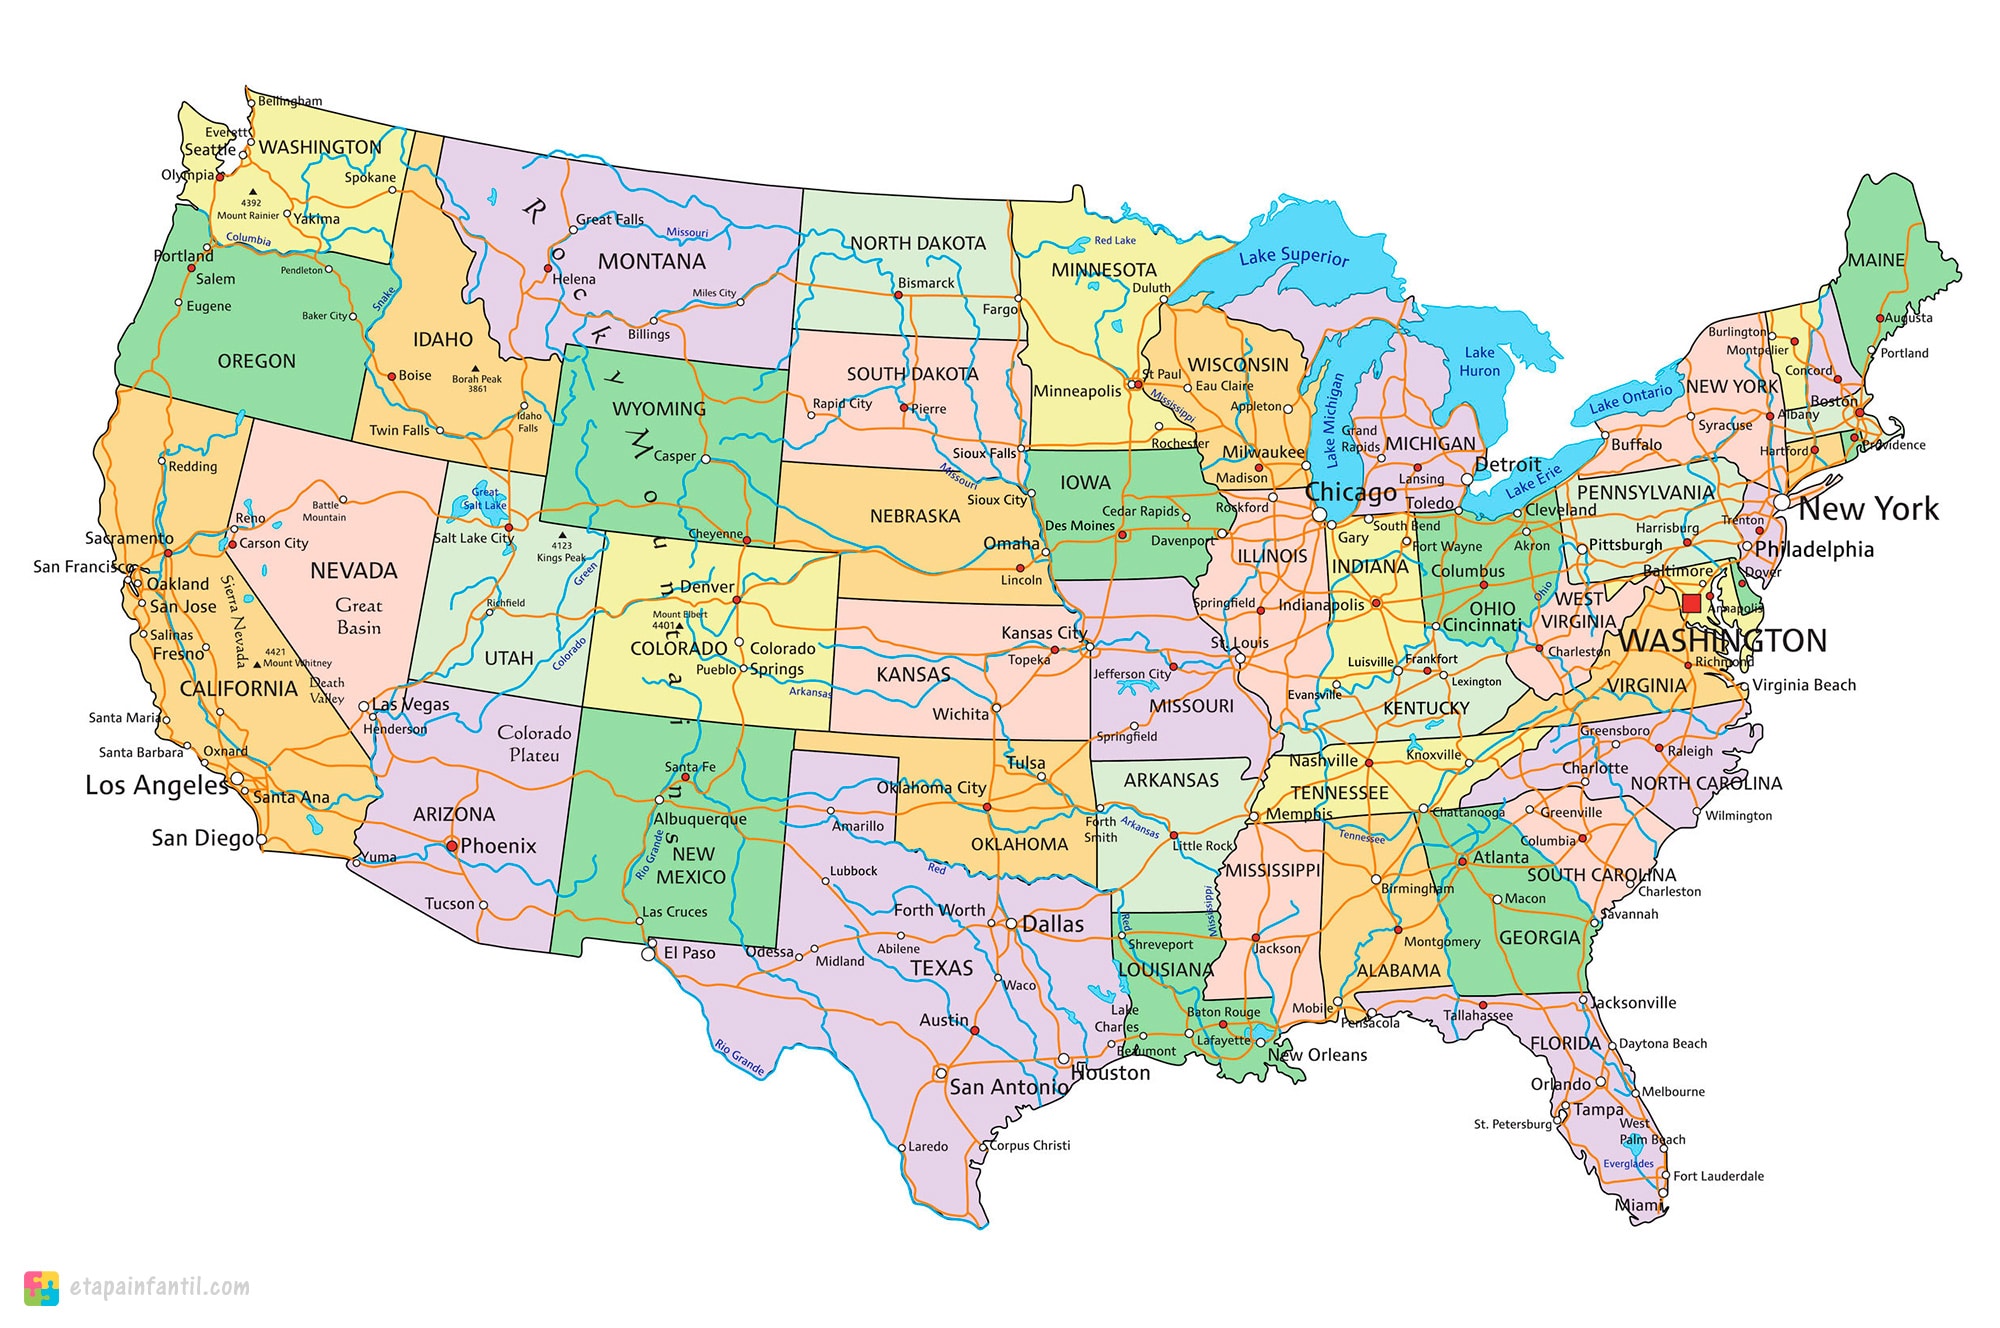 Mapas de Estados Unidos para imprimir - Etapa Infantil